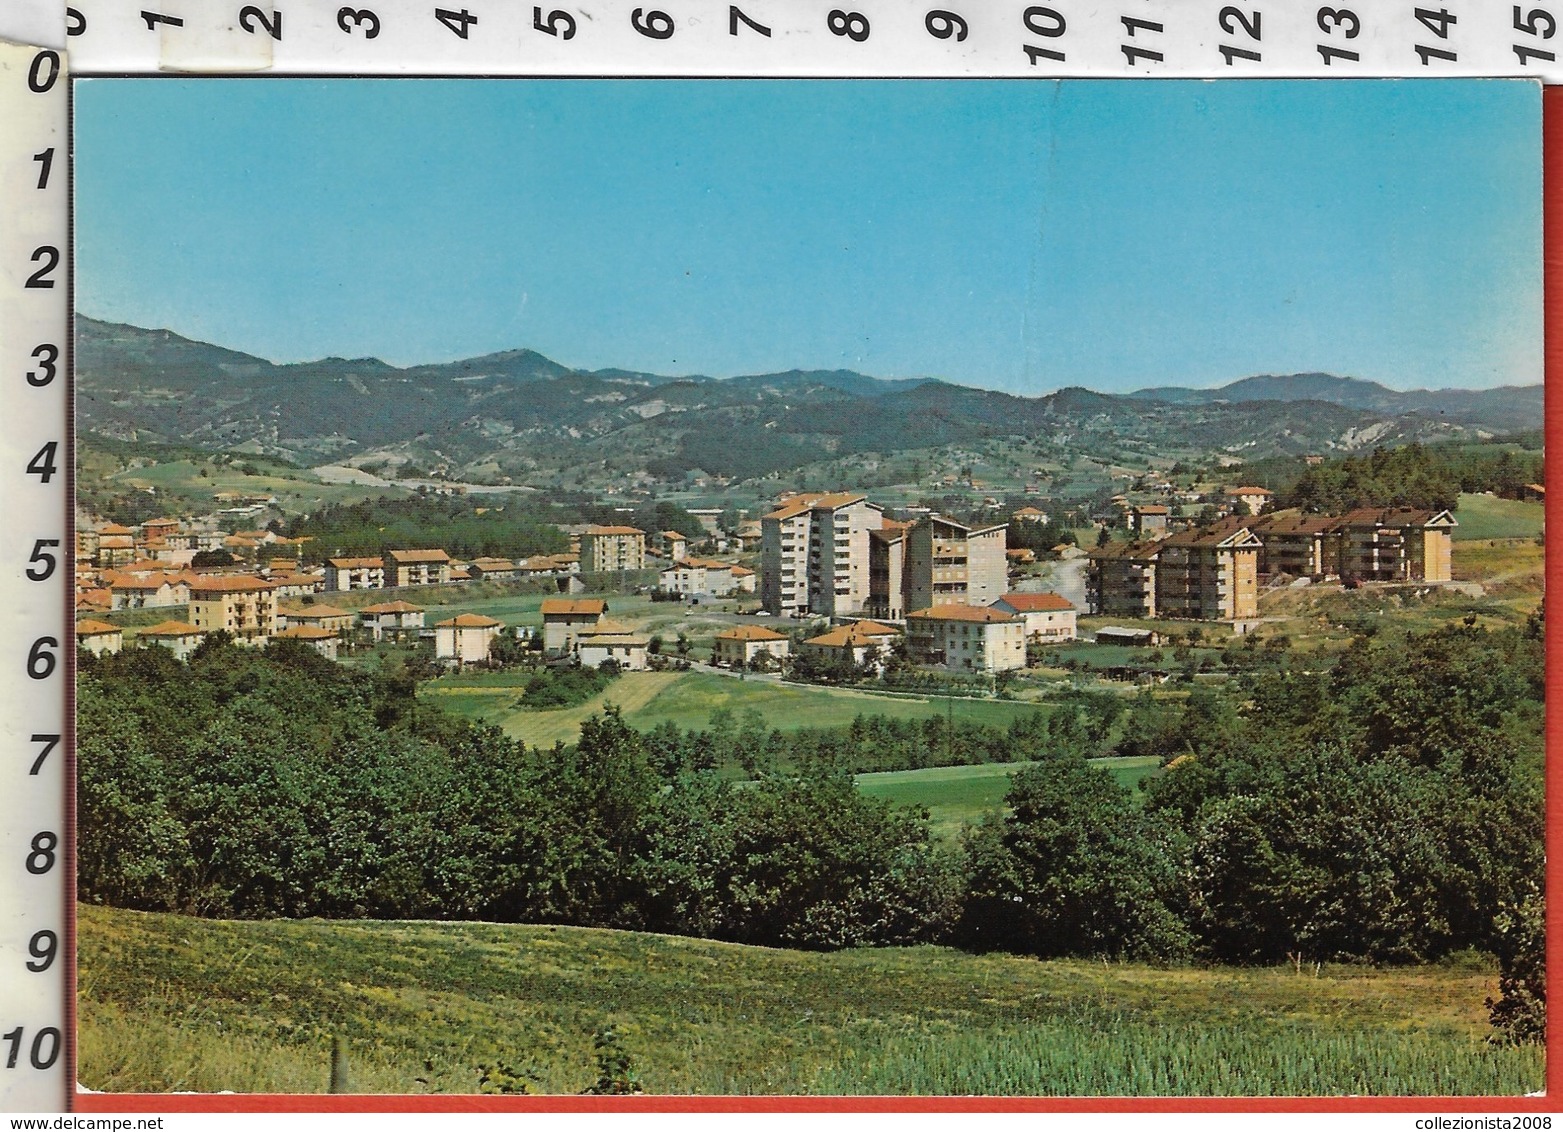 CAIRO MONTENOTTE/Savona "Regione Buglio" Cartolina/postcard-1989 Non Viaggiata-----(mio N°46) - Savona